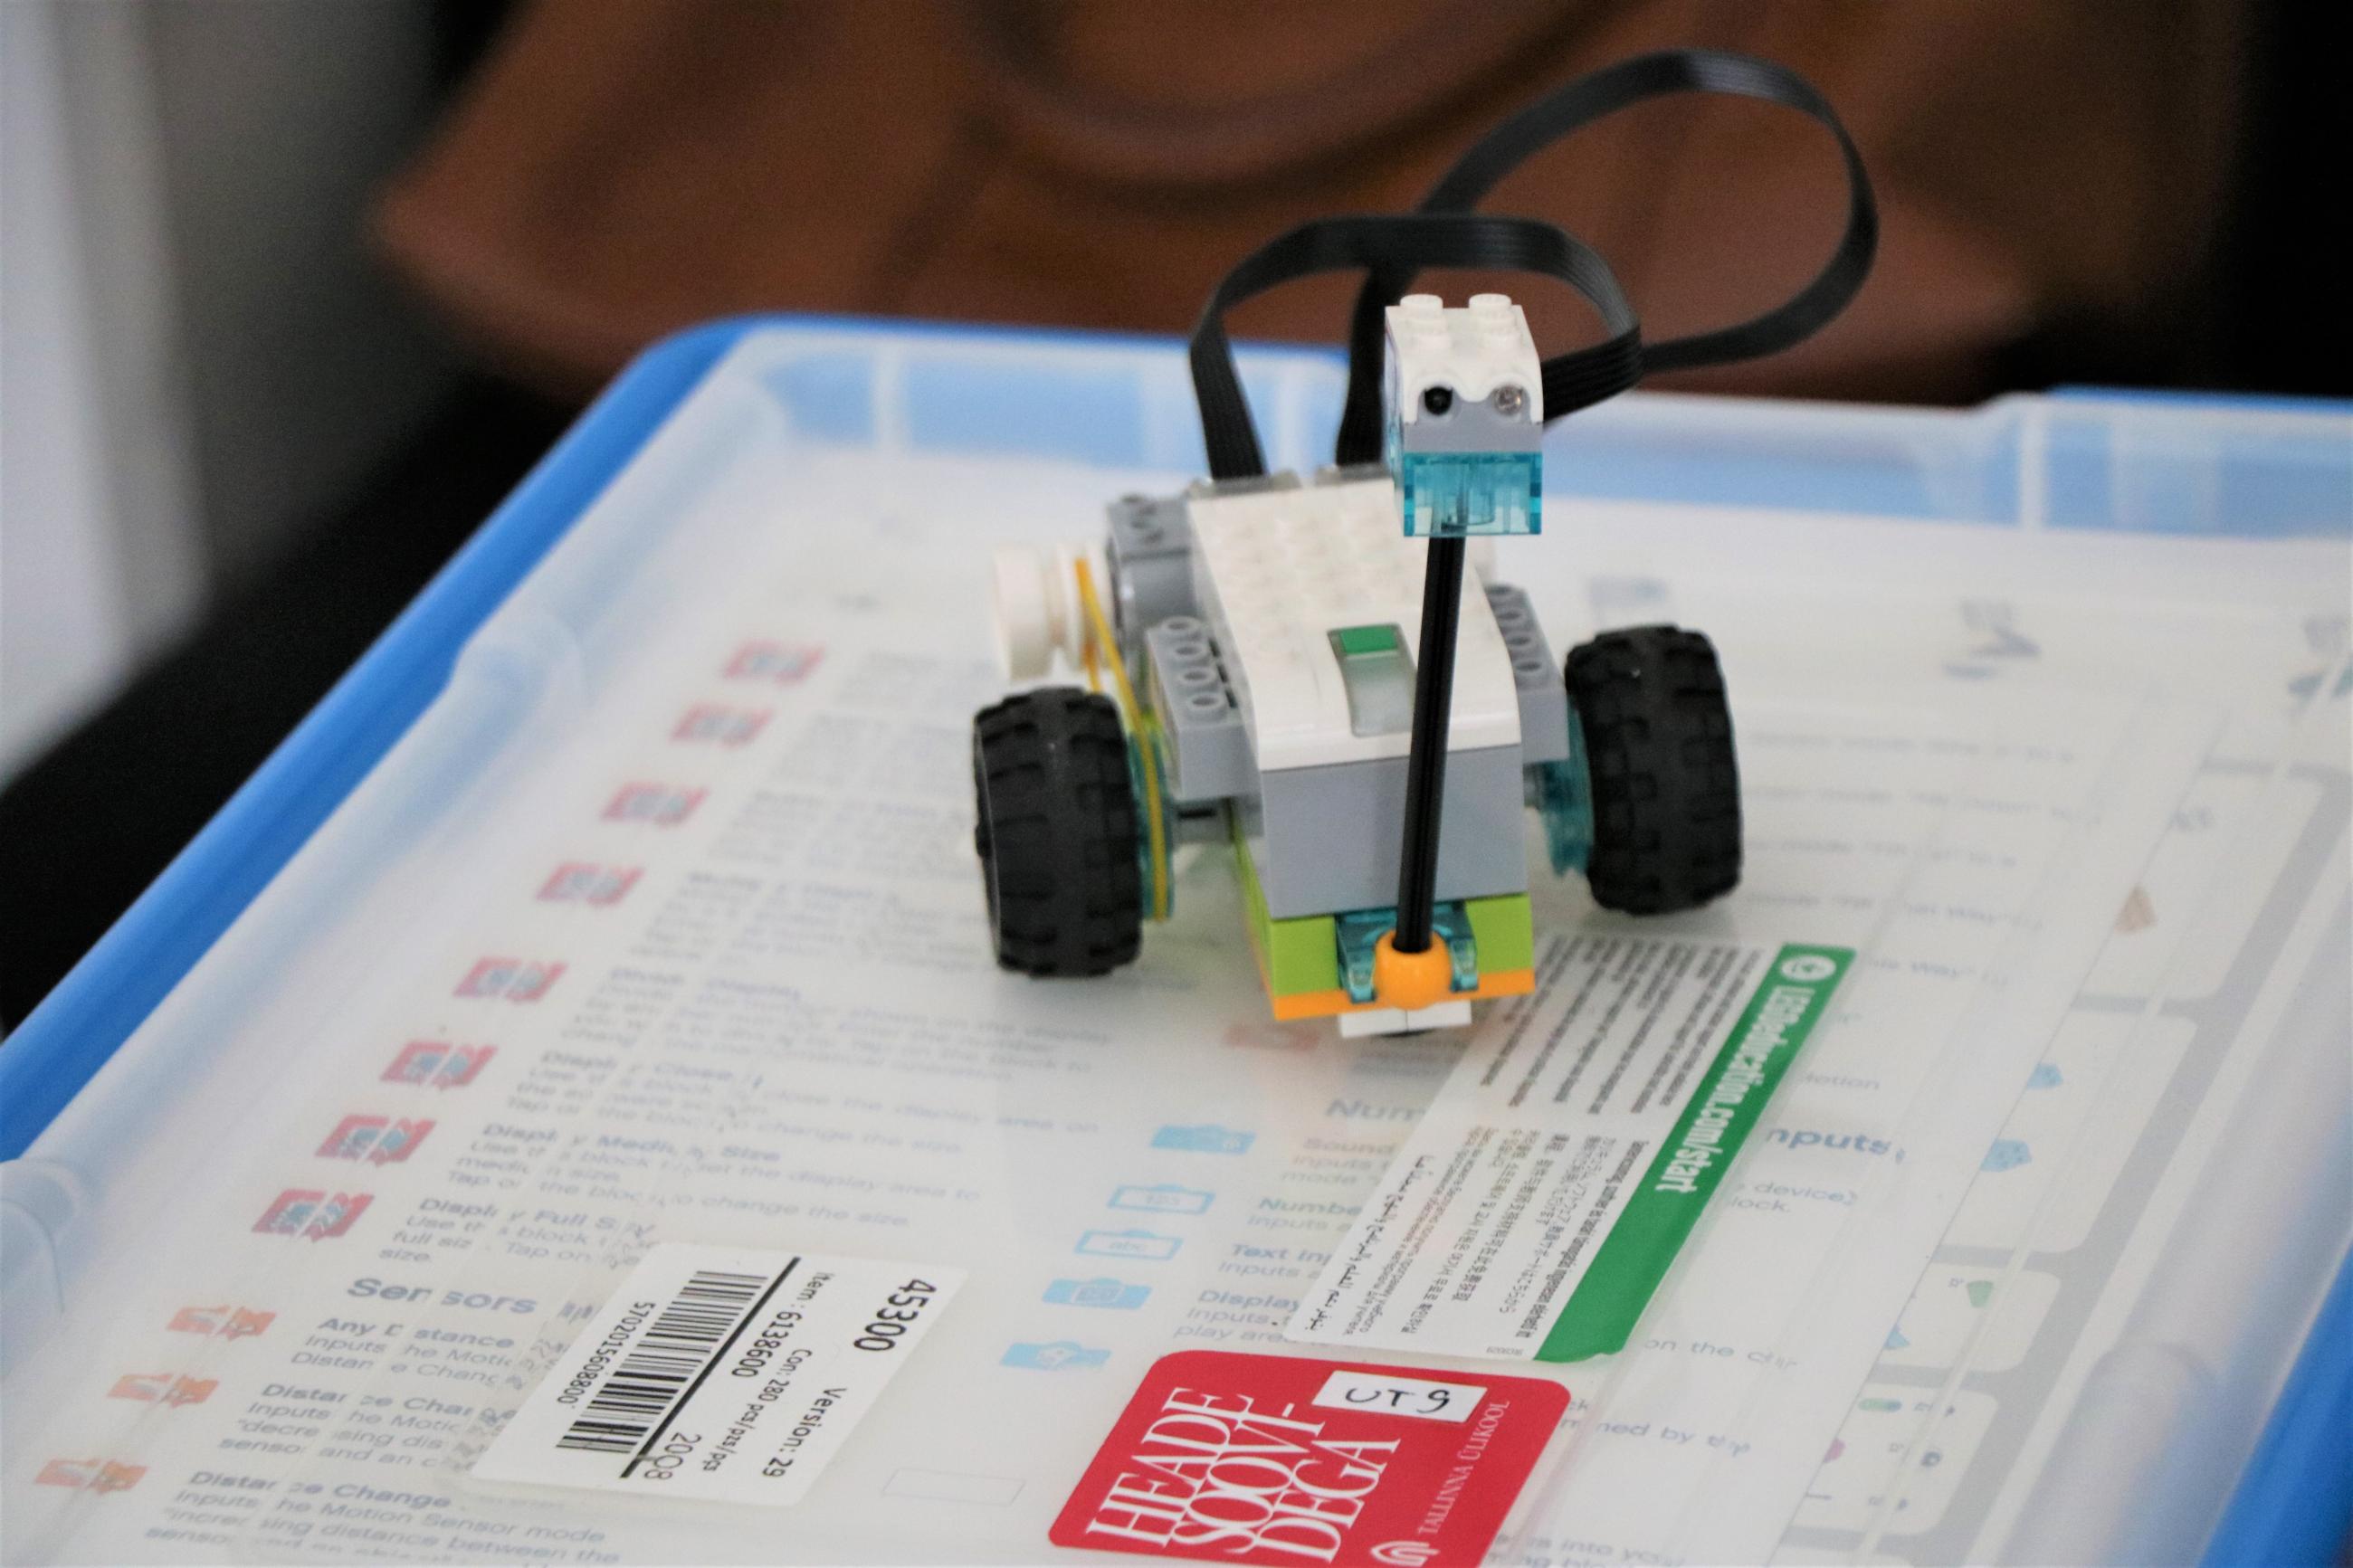 Lego WeDo robot